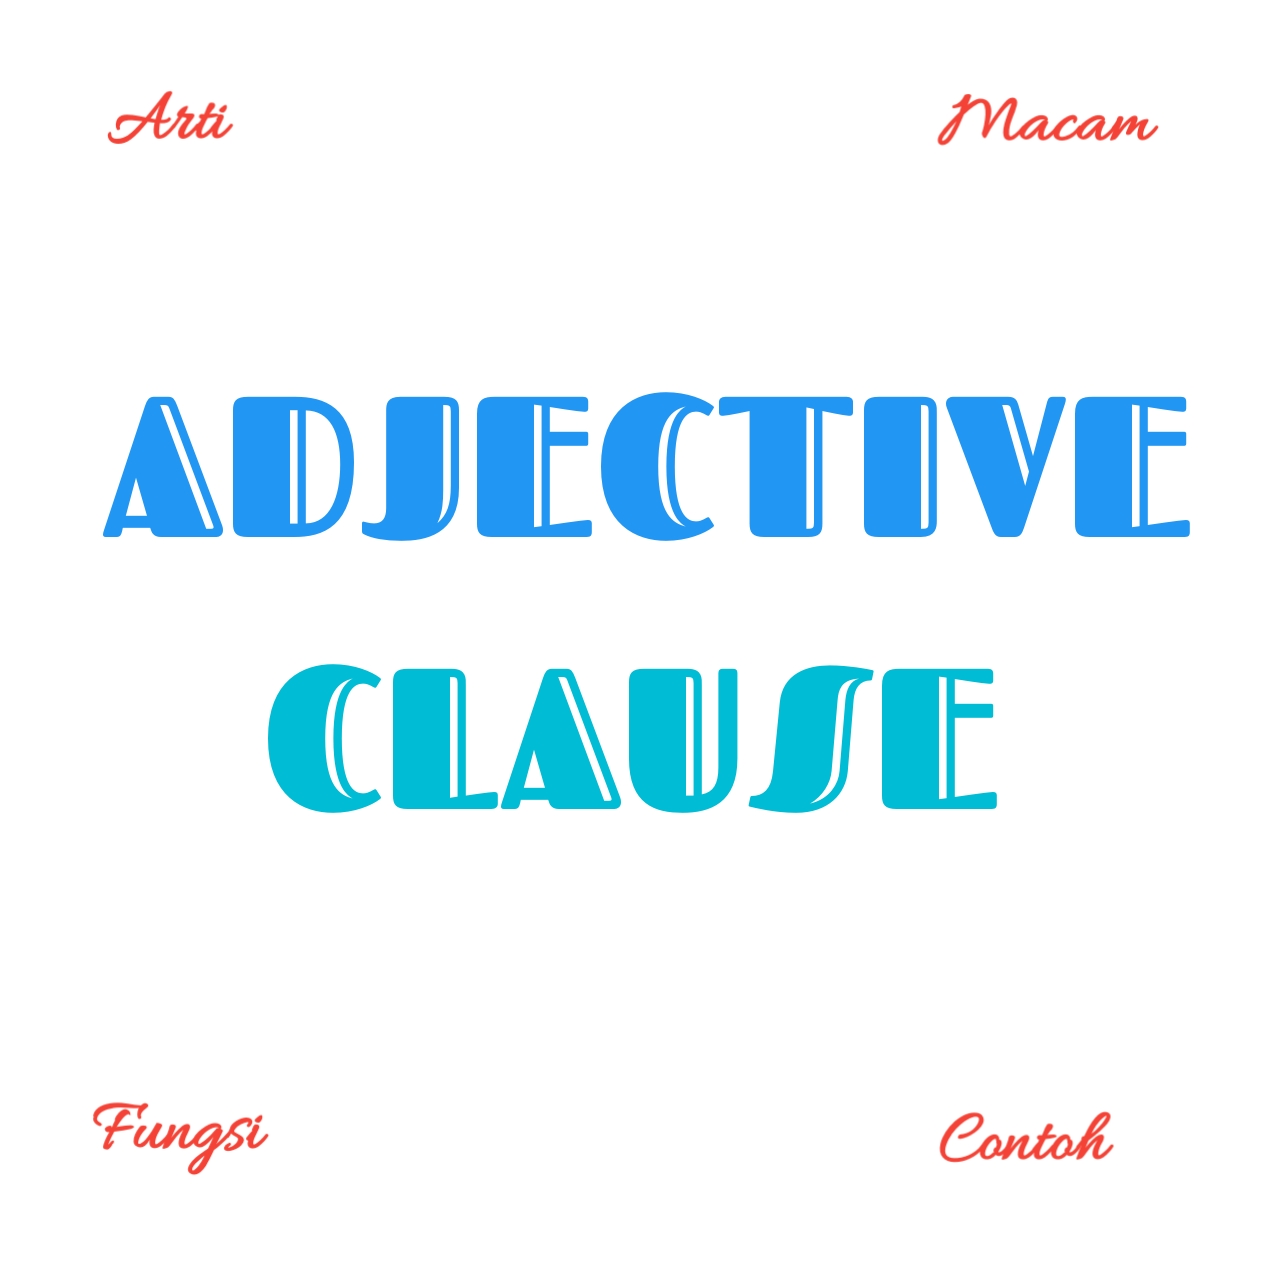 adjective-clause-pengertian-macam-fungsi-dan-contoh-dunia-bahasa-inggris